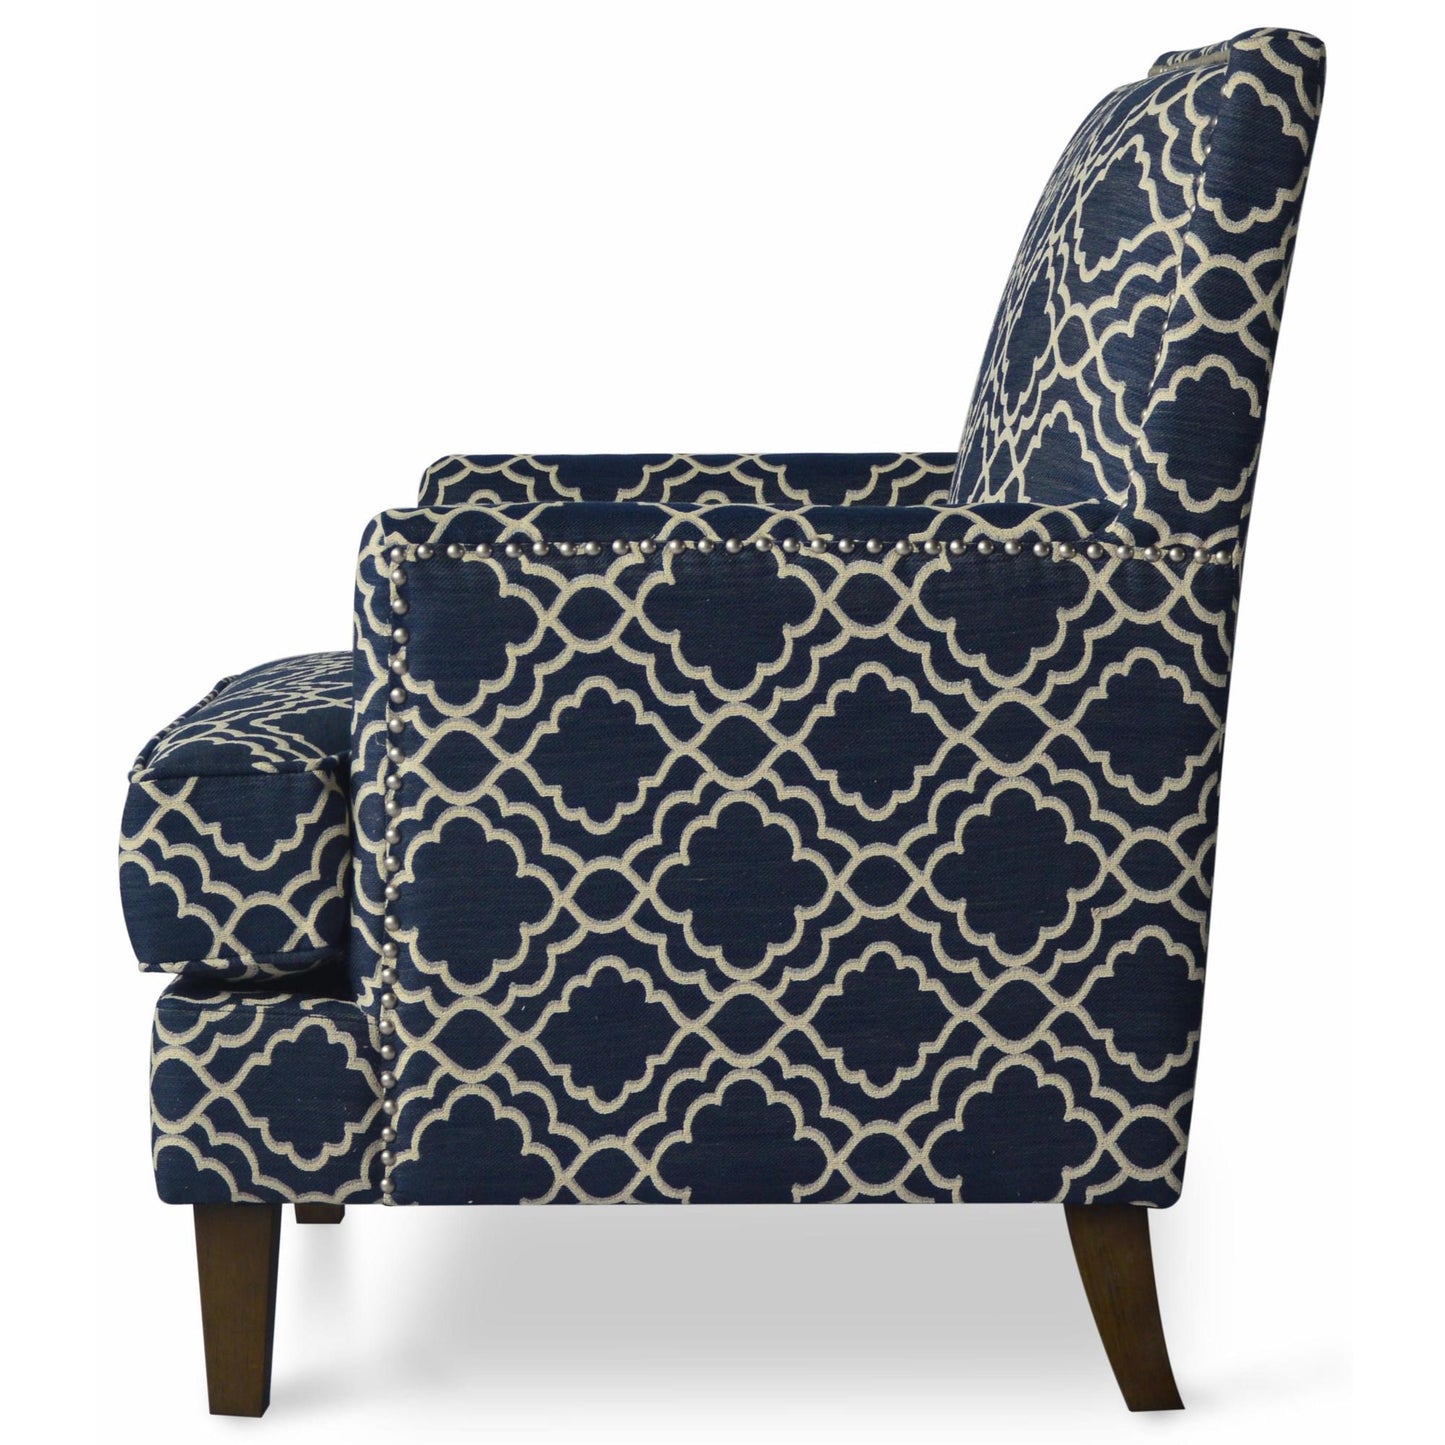 Aubrey Accent Chair in Marine Fabric